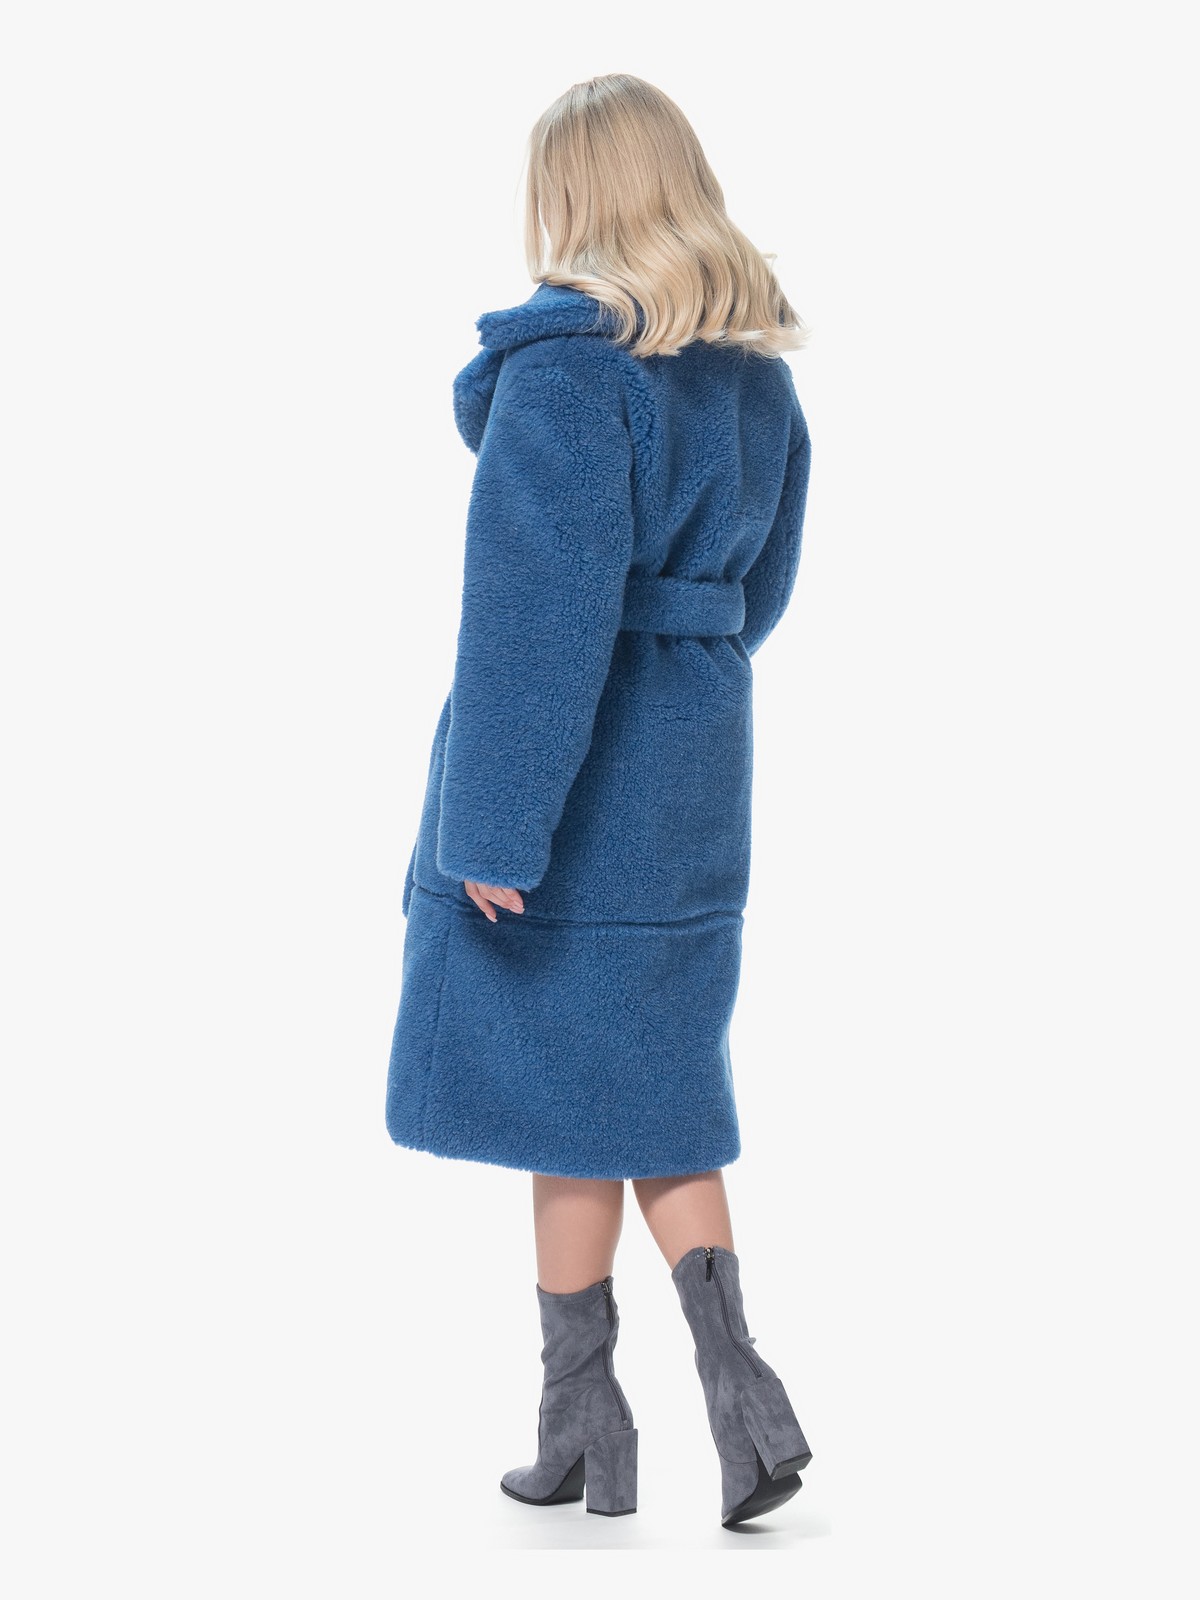 Женская Шуба Чебурашка из овчины Синяя Модель Аврора Длинная | Фото №5